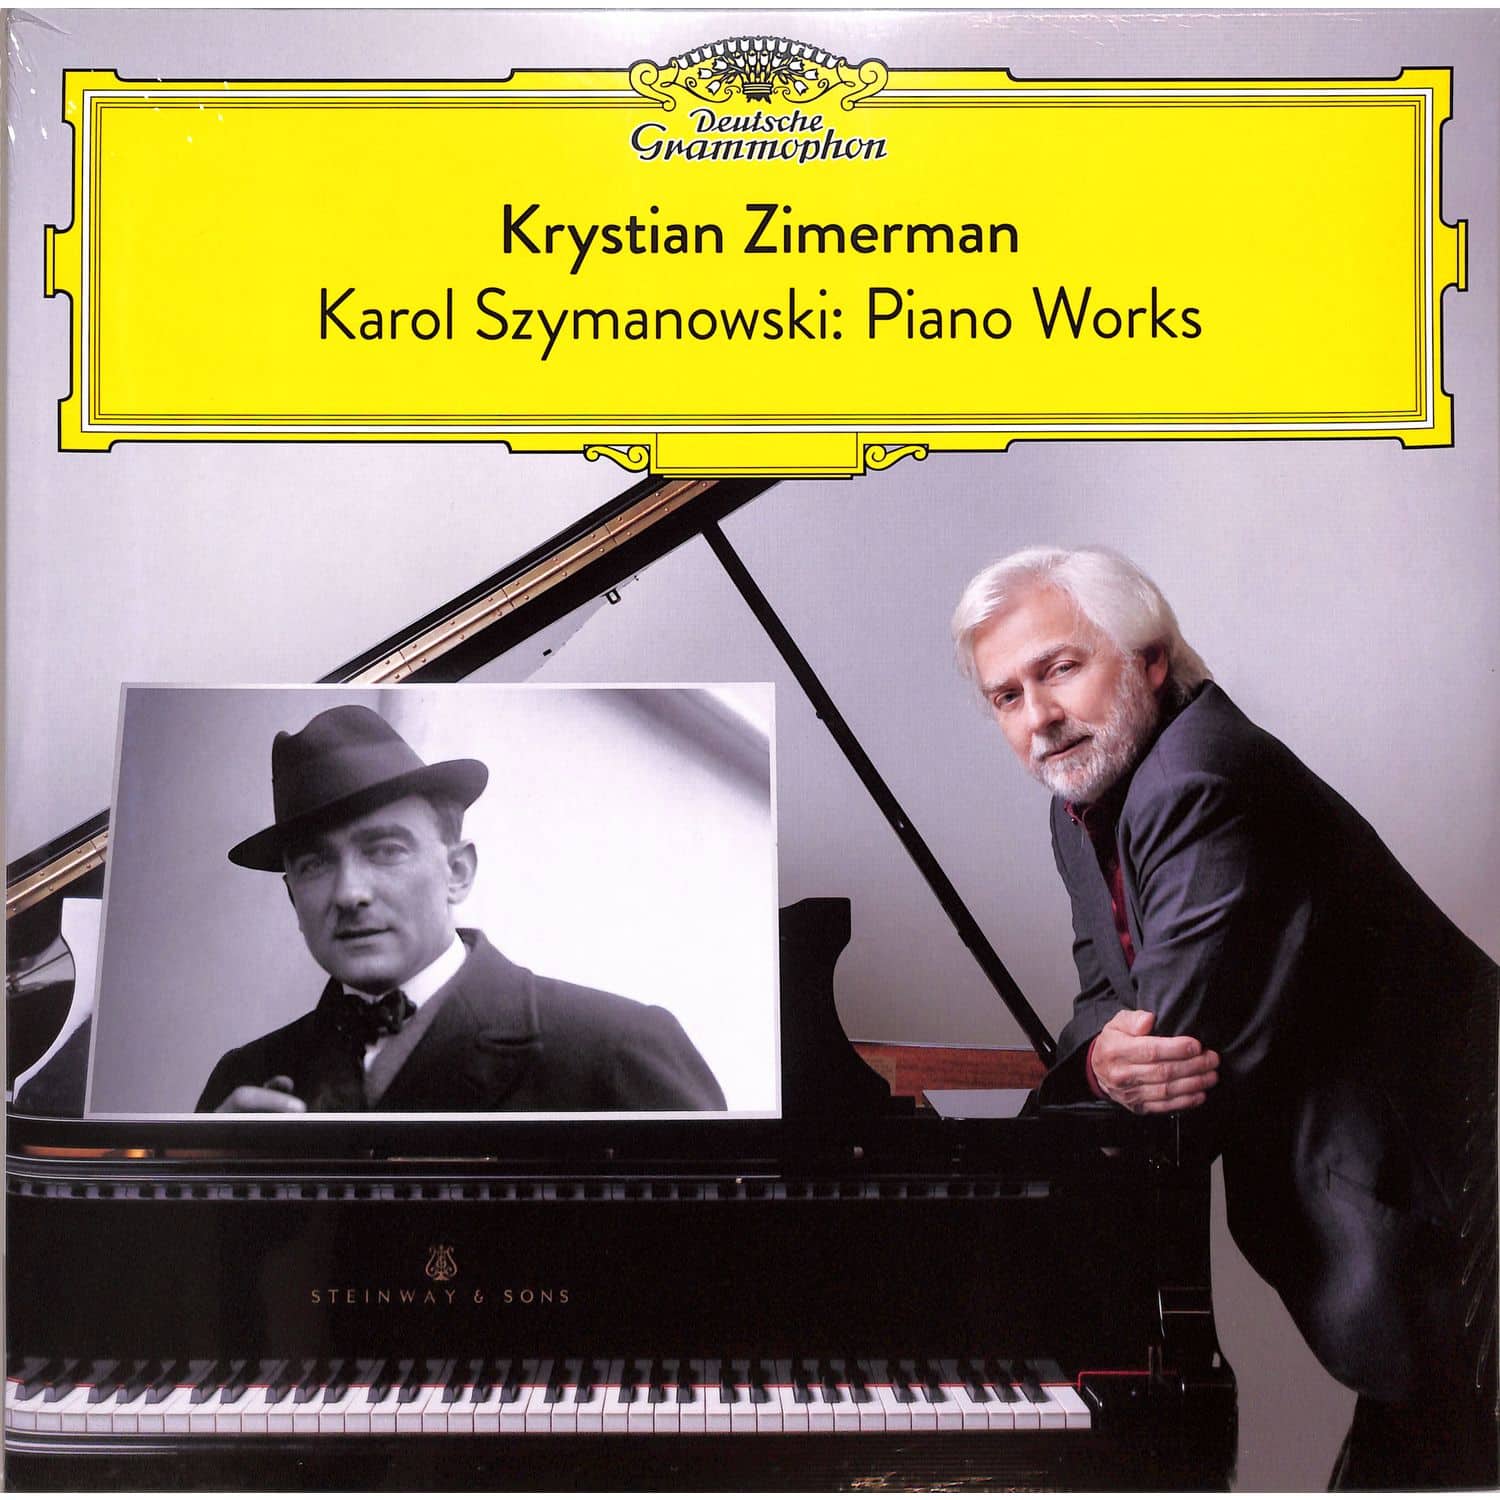 Krystian Zimerman - KAROL SZYMANOWSKI: PIANO WORKS 